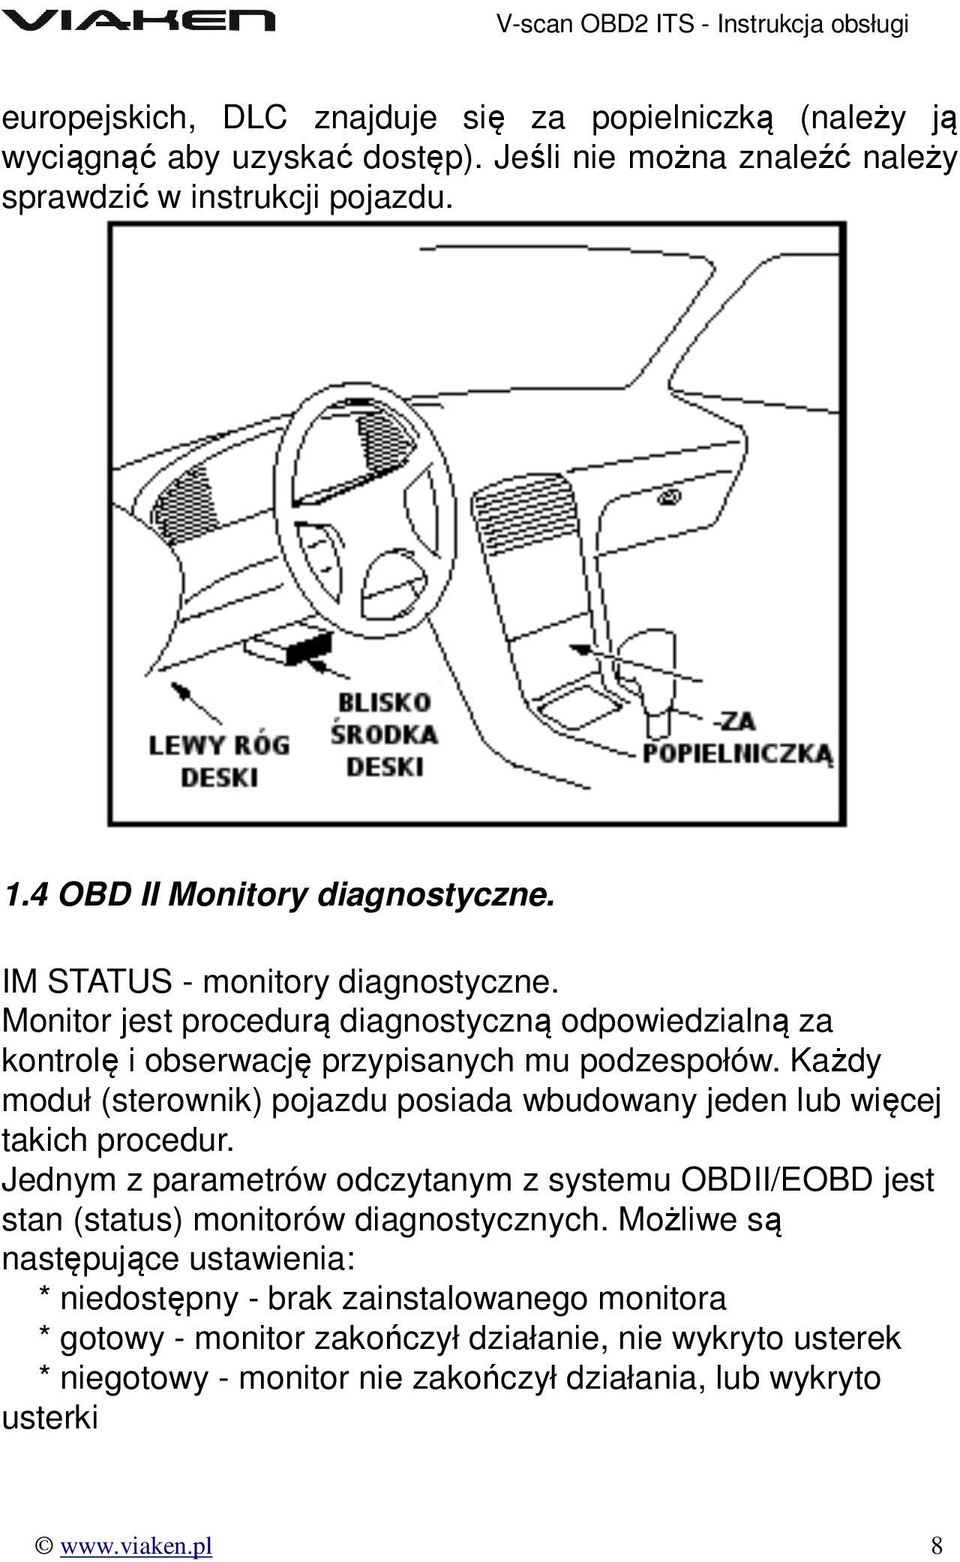 Każdy moduł (sterownik) pojazdu posiada wbudowany jeden lub więcej takich procedur. Jednym z parametrów odczytanym z systemu OBDII/EOBD jest stan (status) monitorów diagnostycznych.